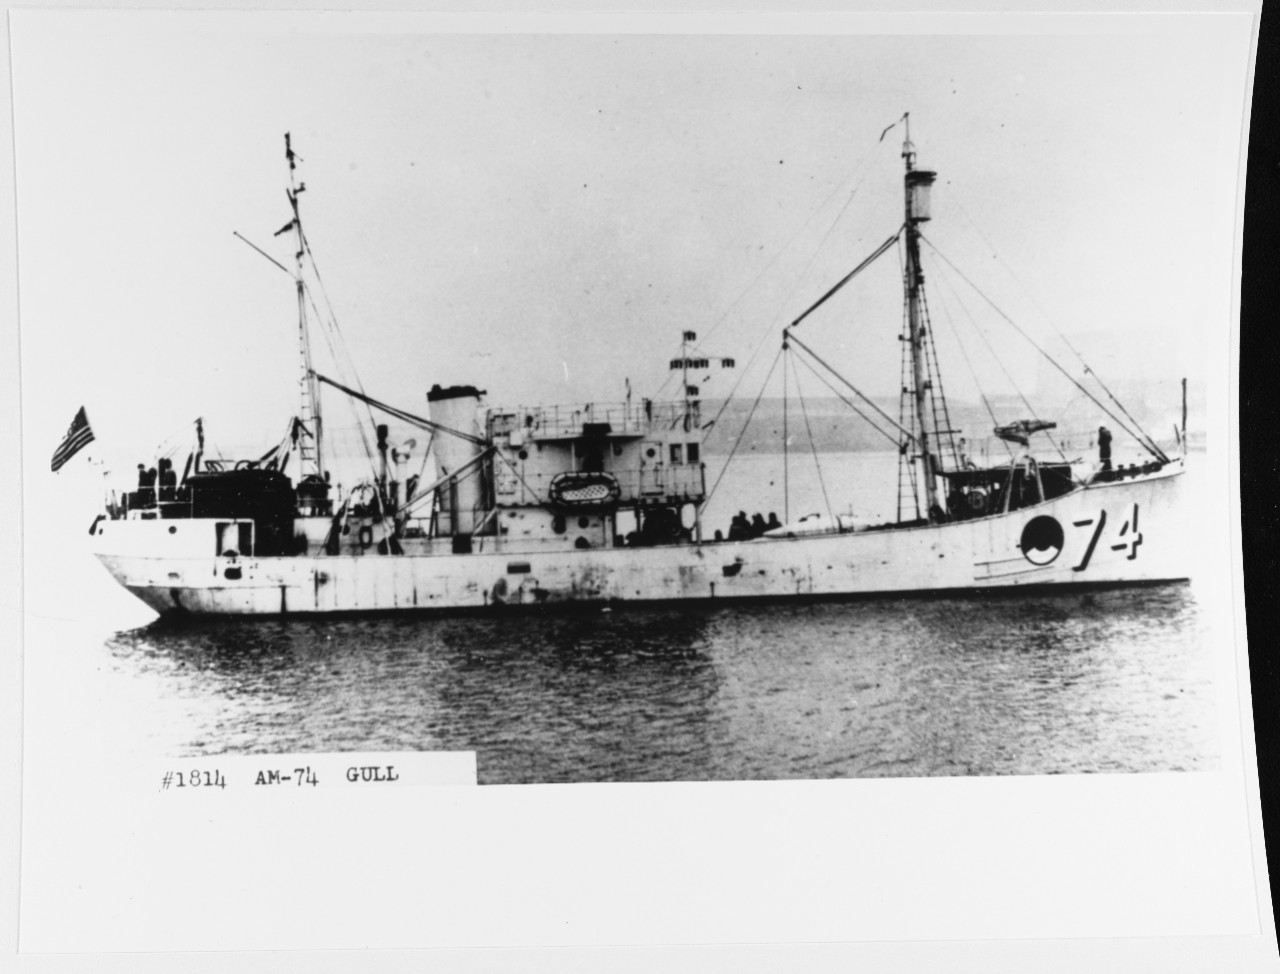 USS GULL (AM-74)